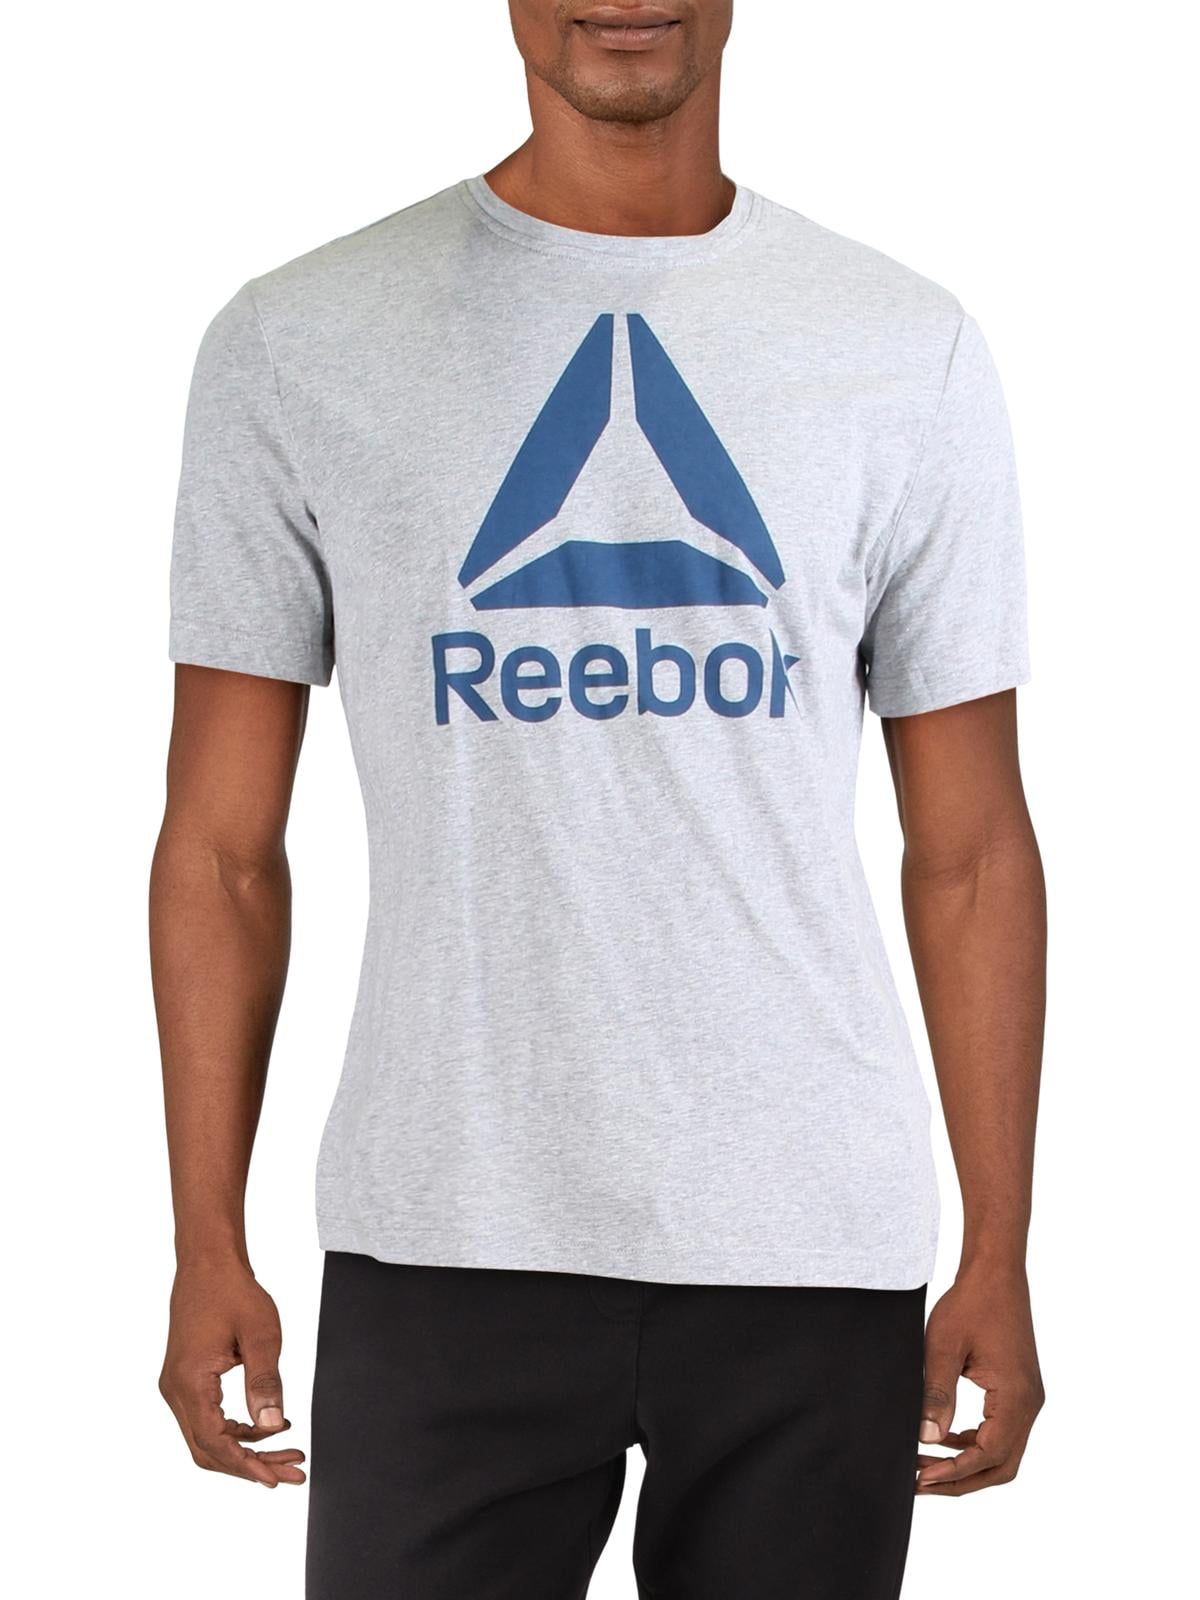 reebok workout t shirt mens